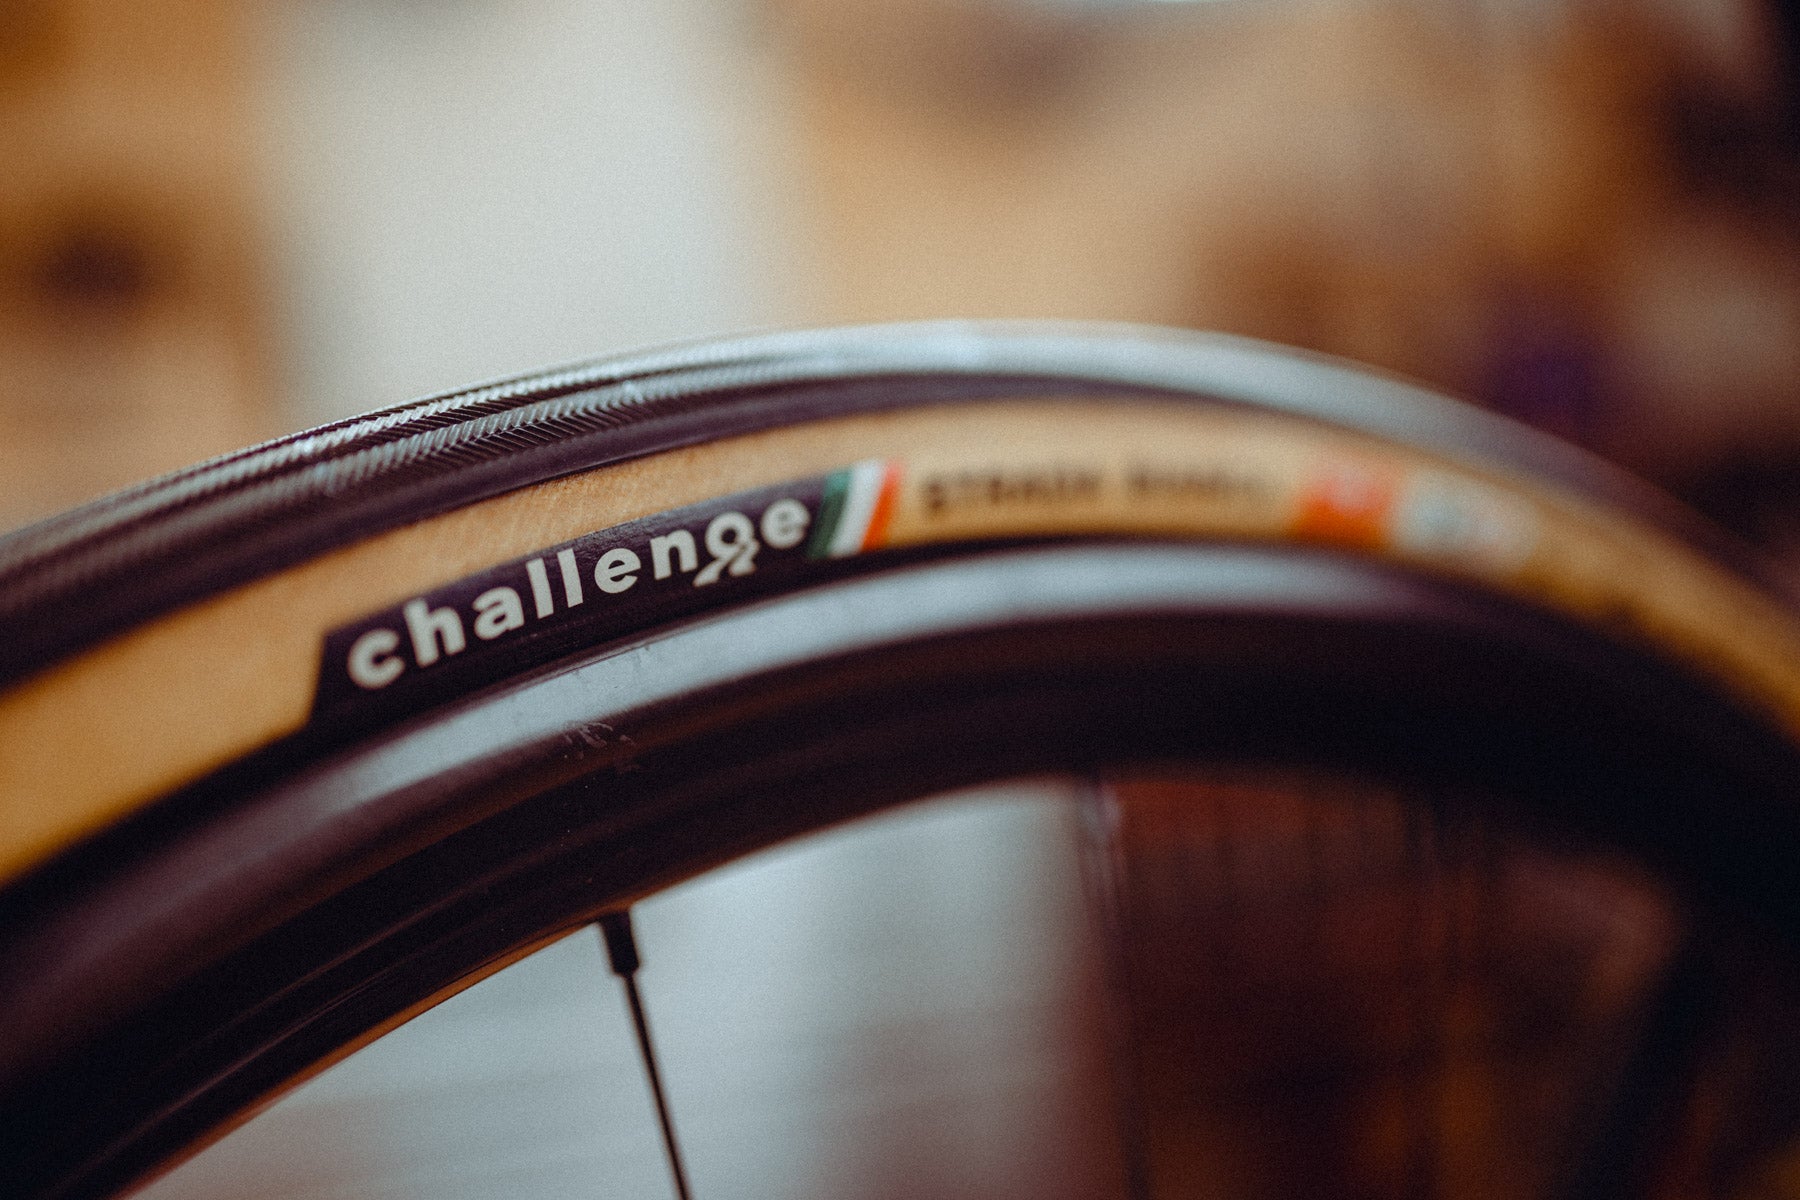 Challenge Tires